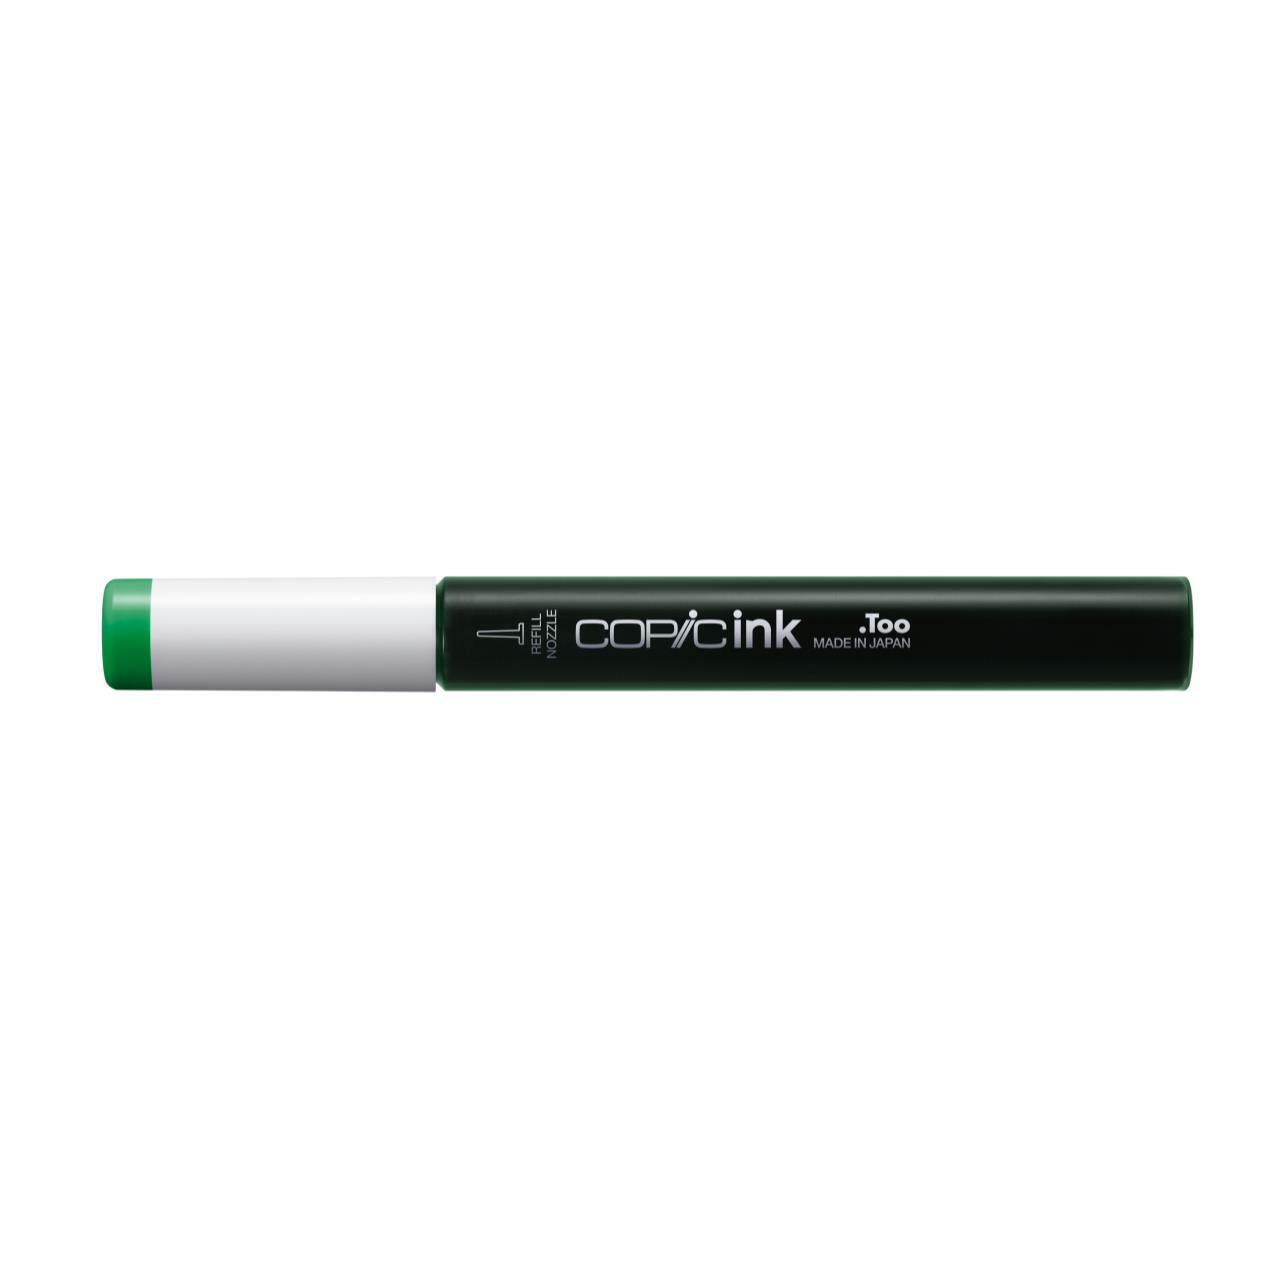 Заправка для маркеров COPIC 12 мл цв. G05 зеленый изумрудный заправка для маркеров copic 12 мл цв t4 оттенок серого 4